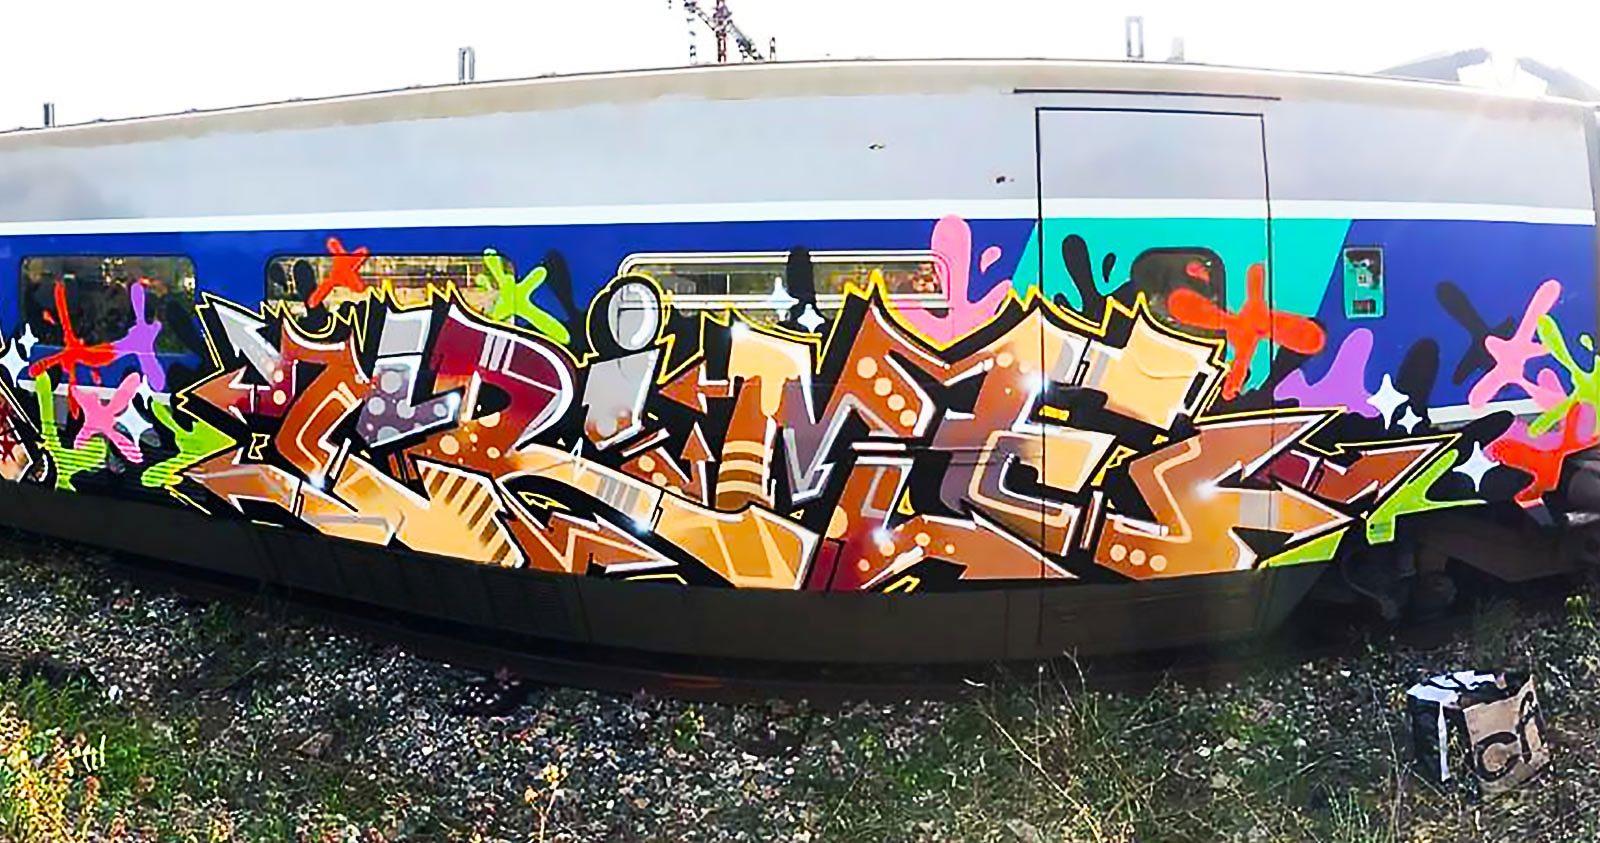 Graffiti à Grande Vitesse